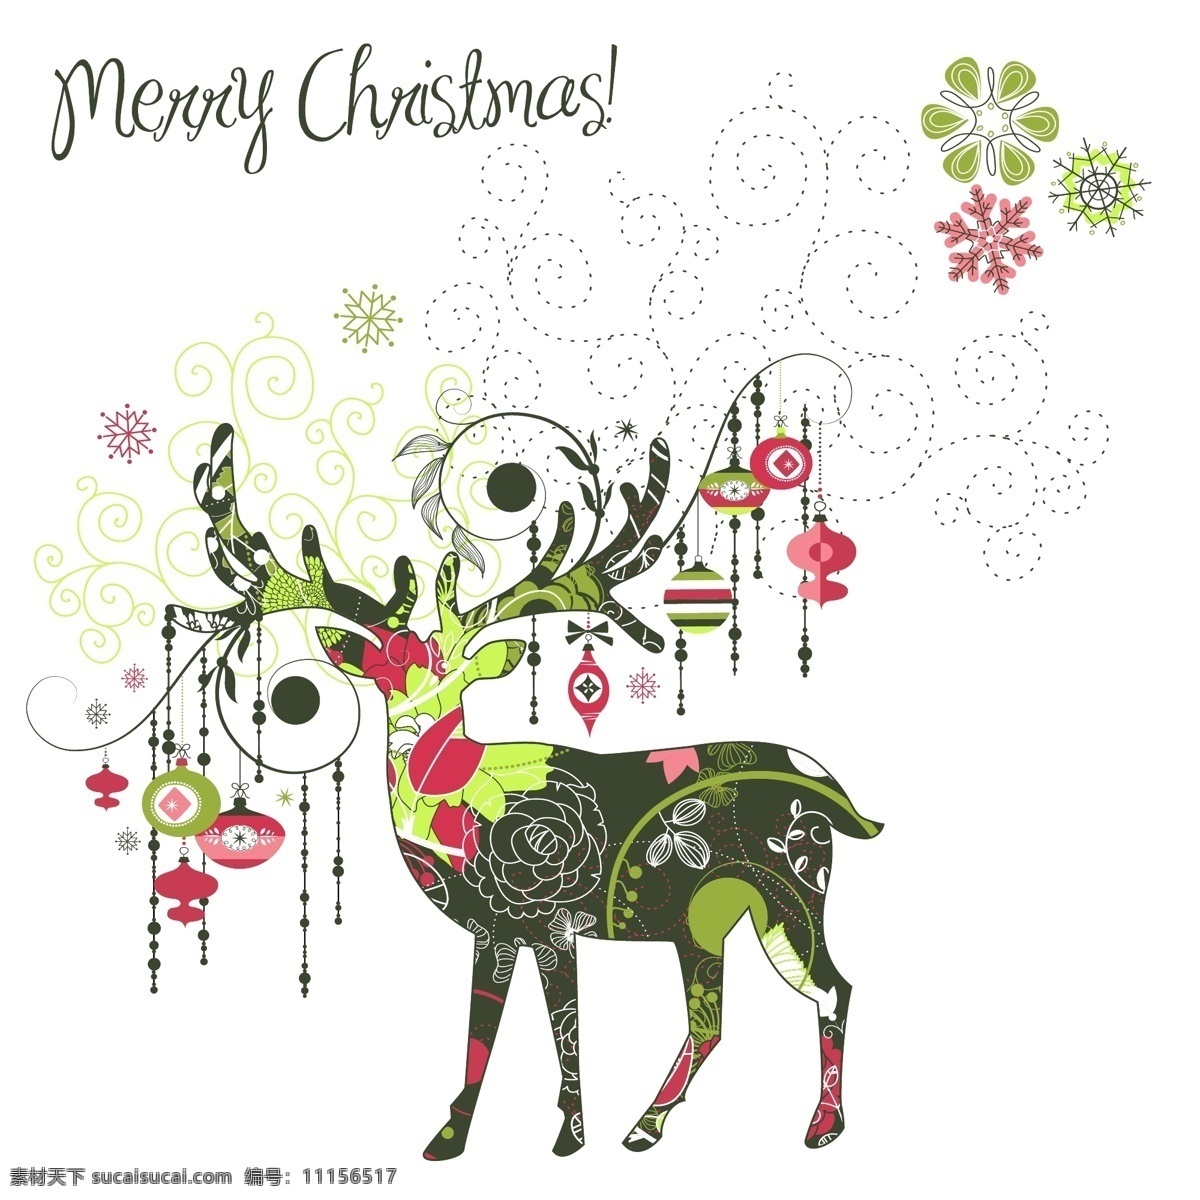 矢量 精美 圣诞 图案 彩球 花纹 麋鹿 圣诞节 矢量素材 线条 节日素材